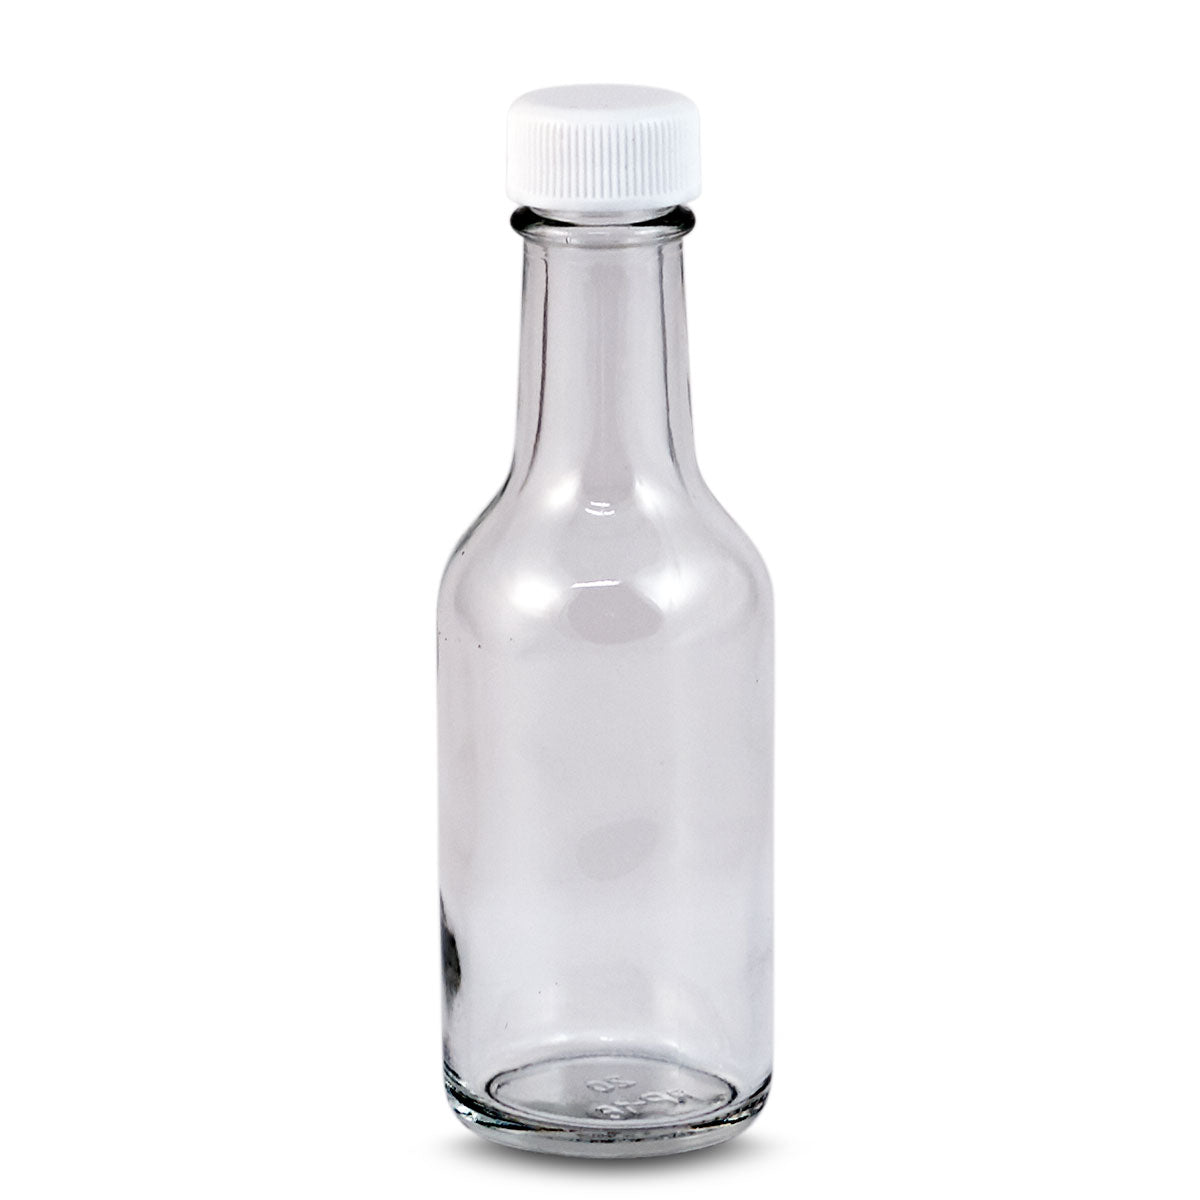 1.7oz/50ml Round Nip Bottle (96 per case)